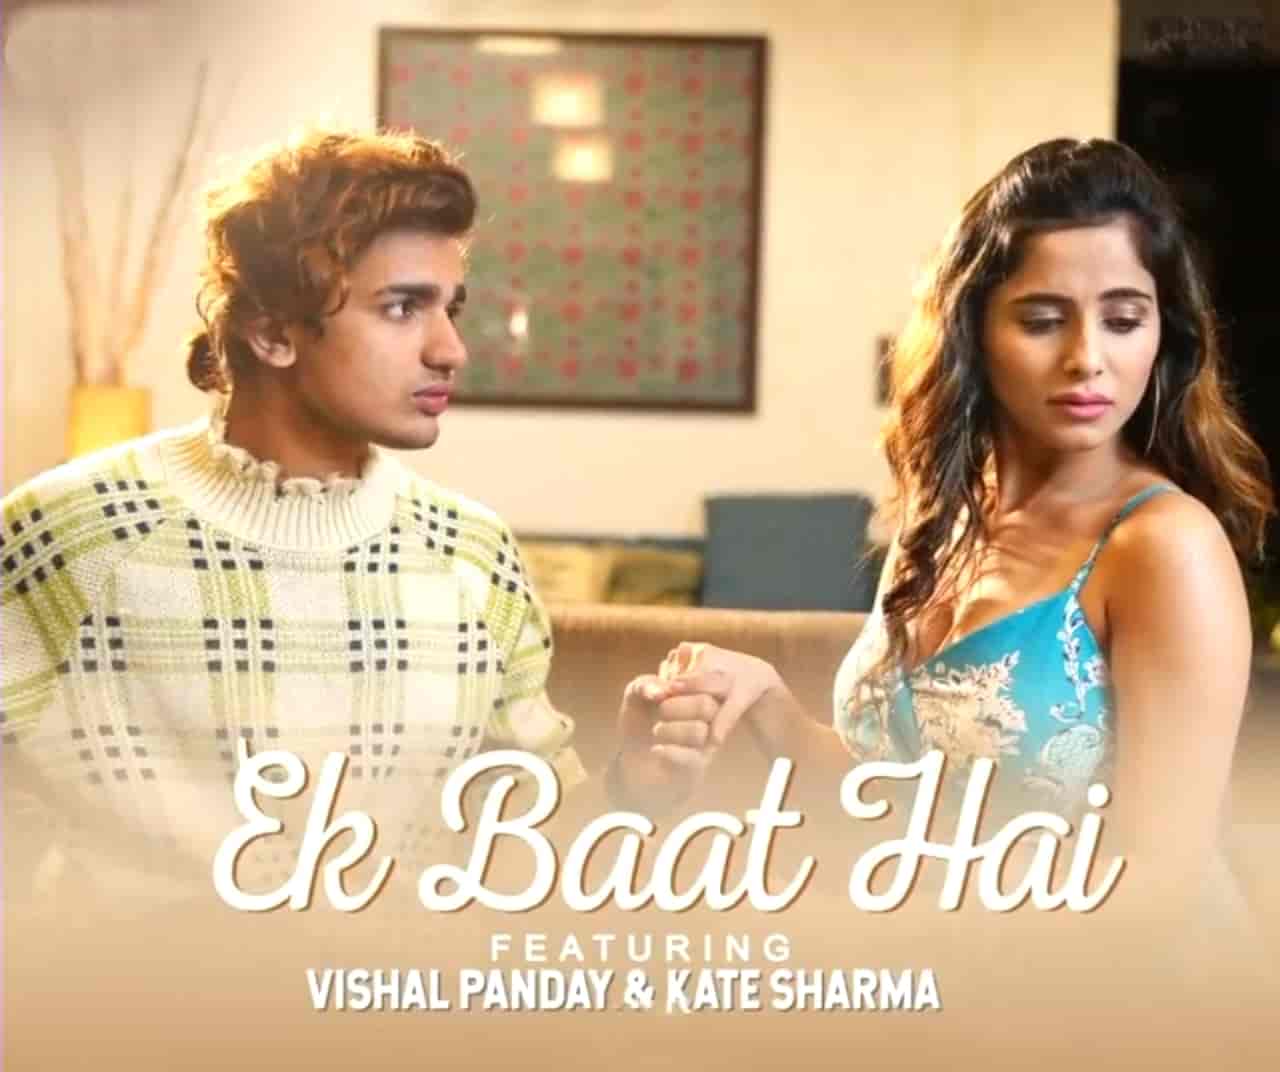 Ek Baat Hai Hindi Song Image Features Vishal Pandey And Kate Sharma